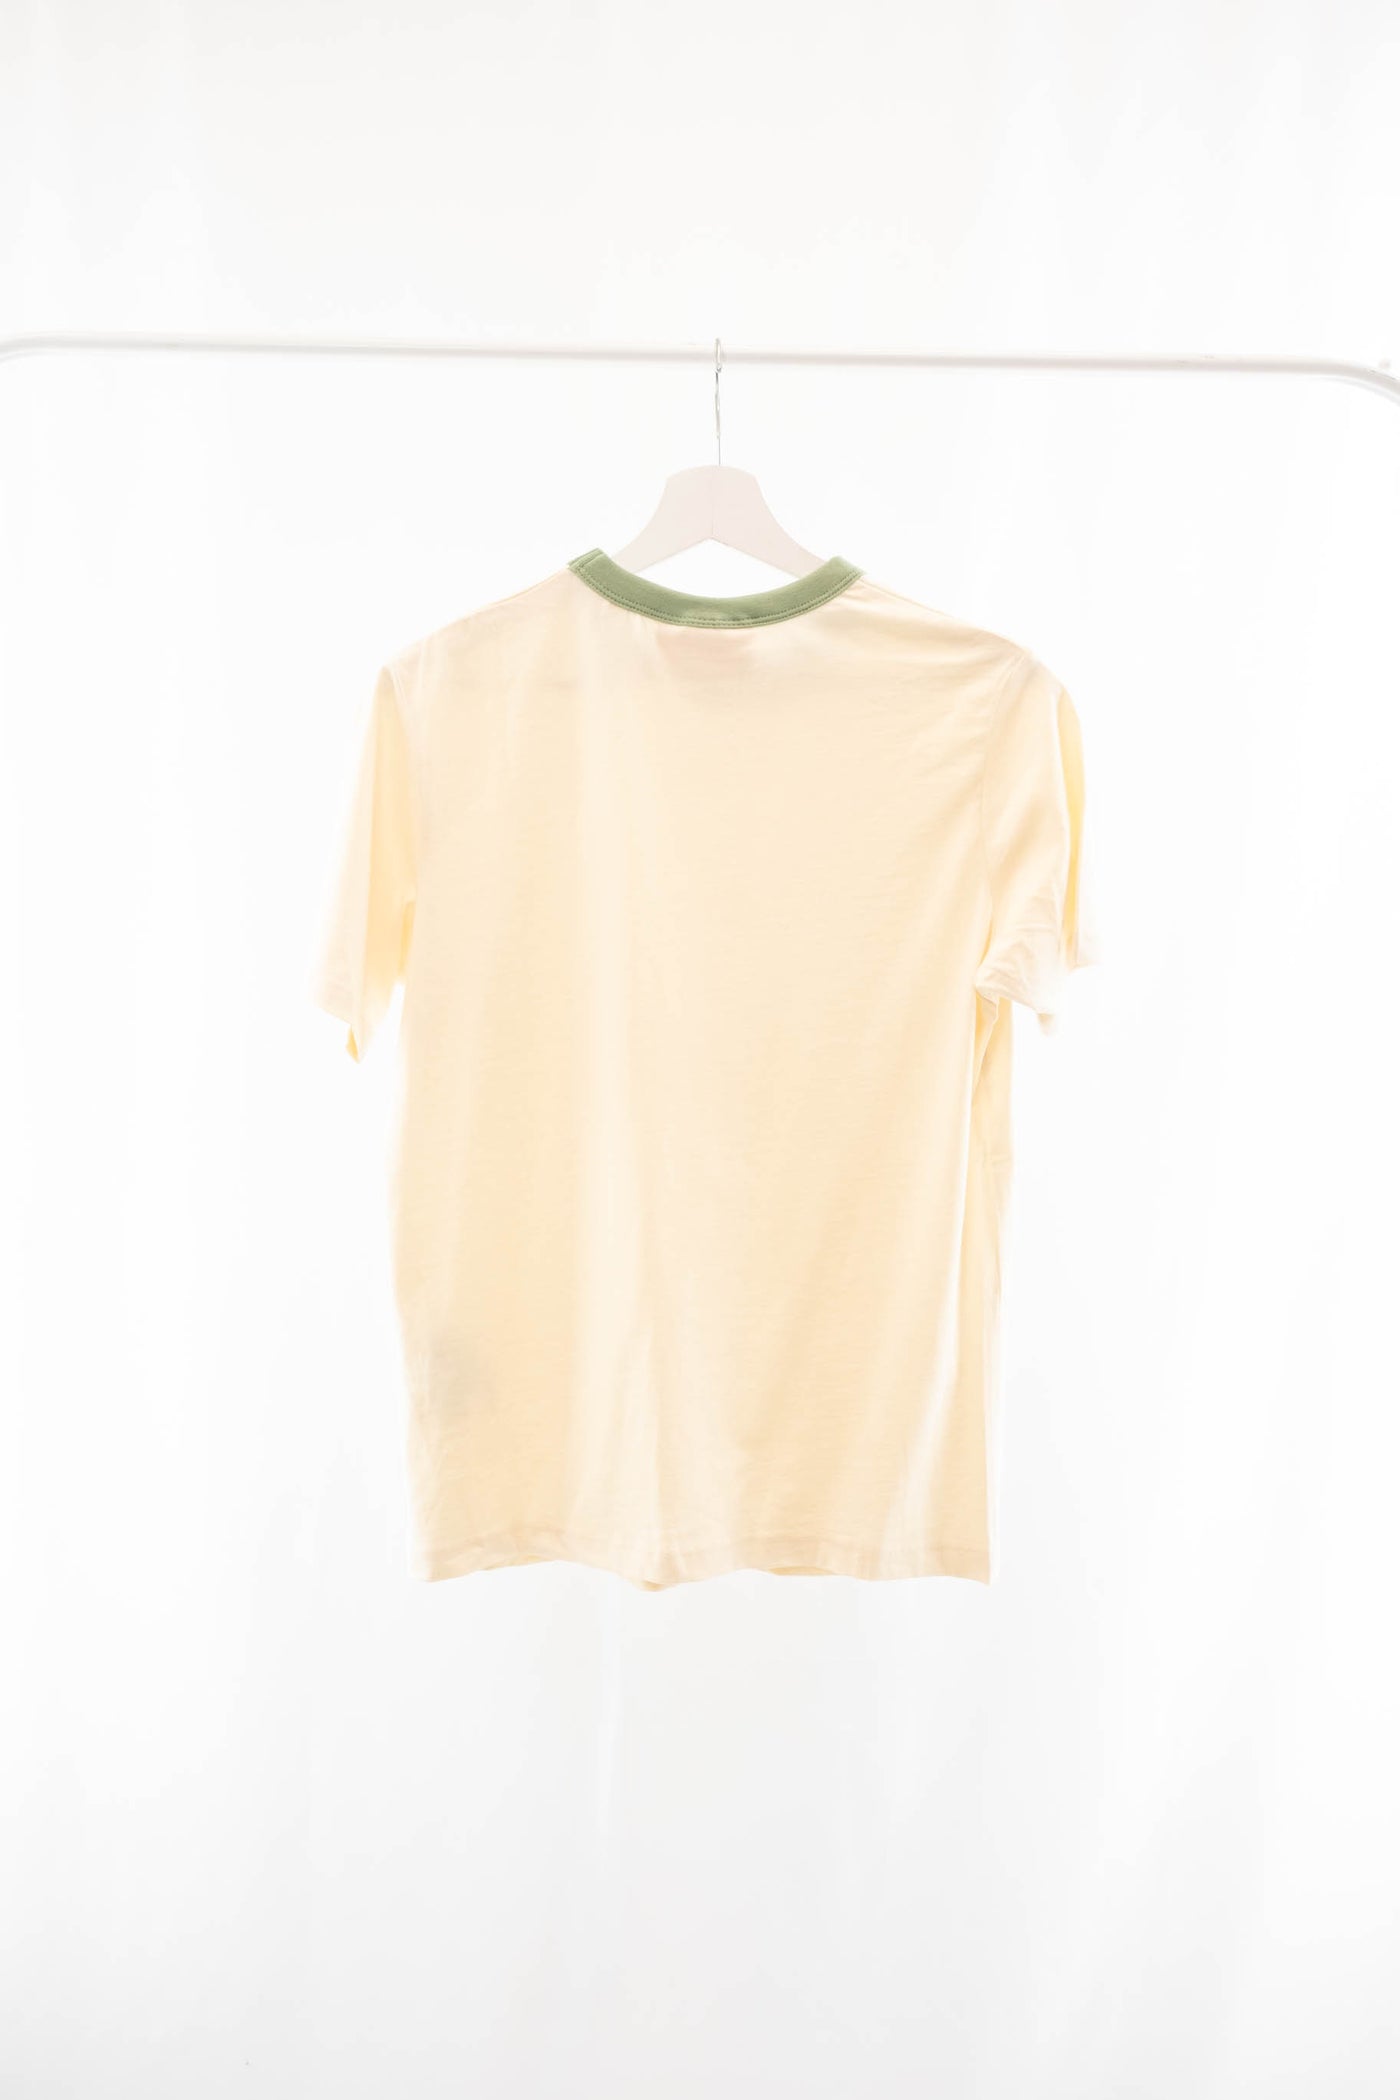 Camiseta beige